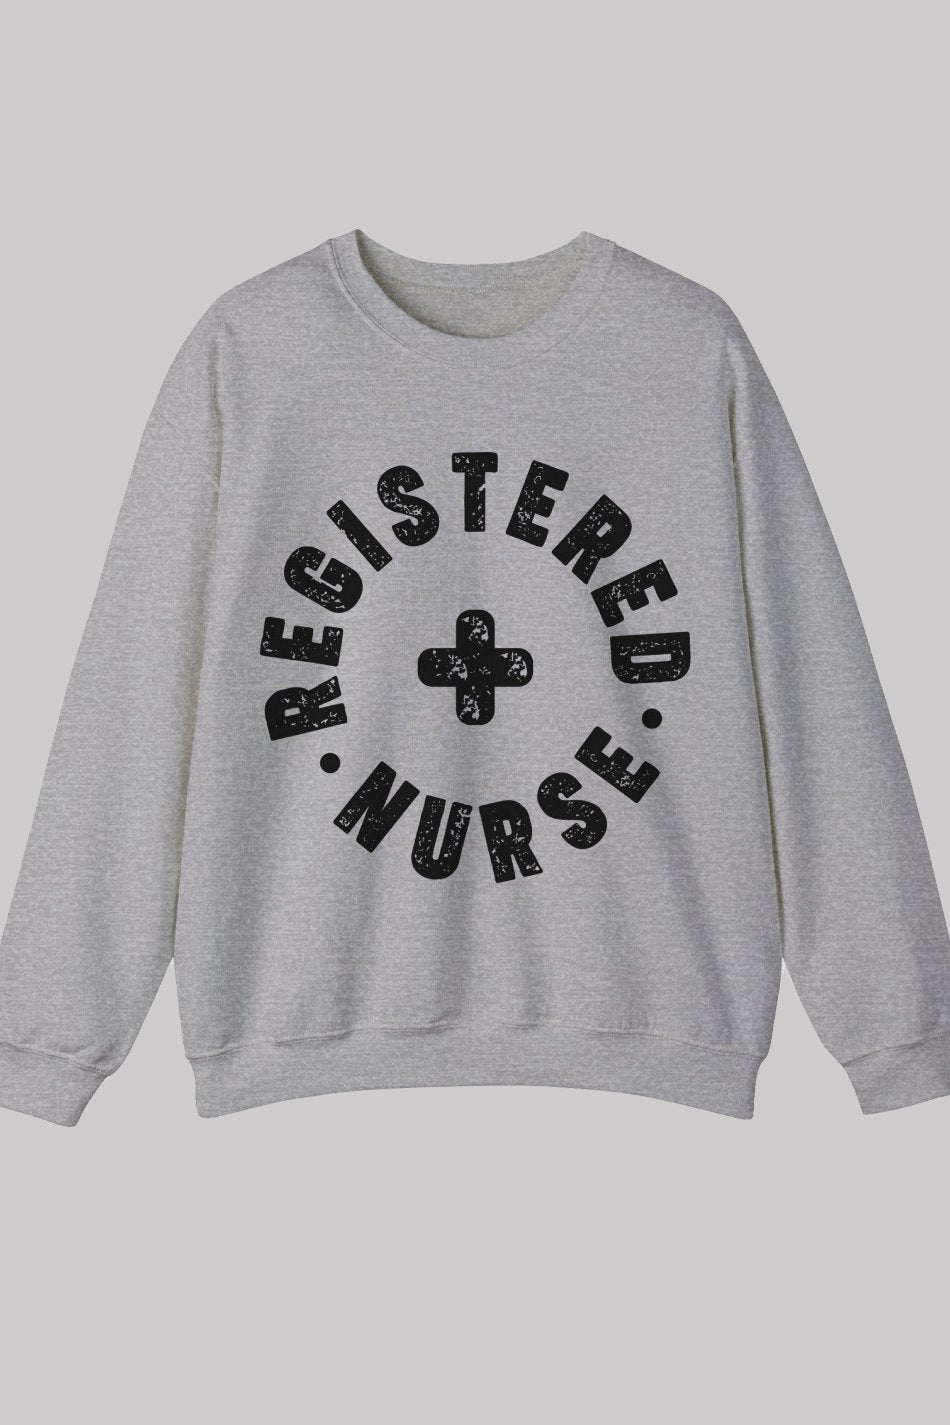 Registered Nurse Graphic Sweatshirt